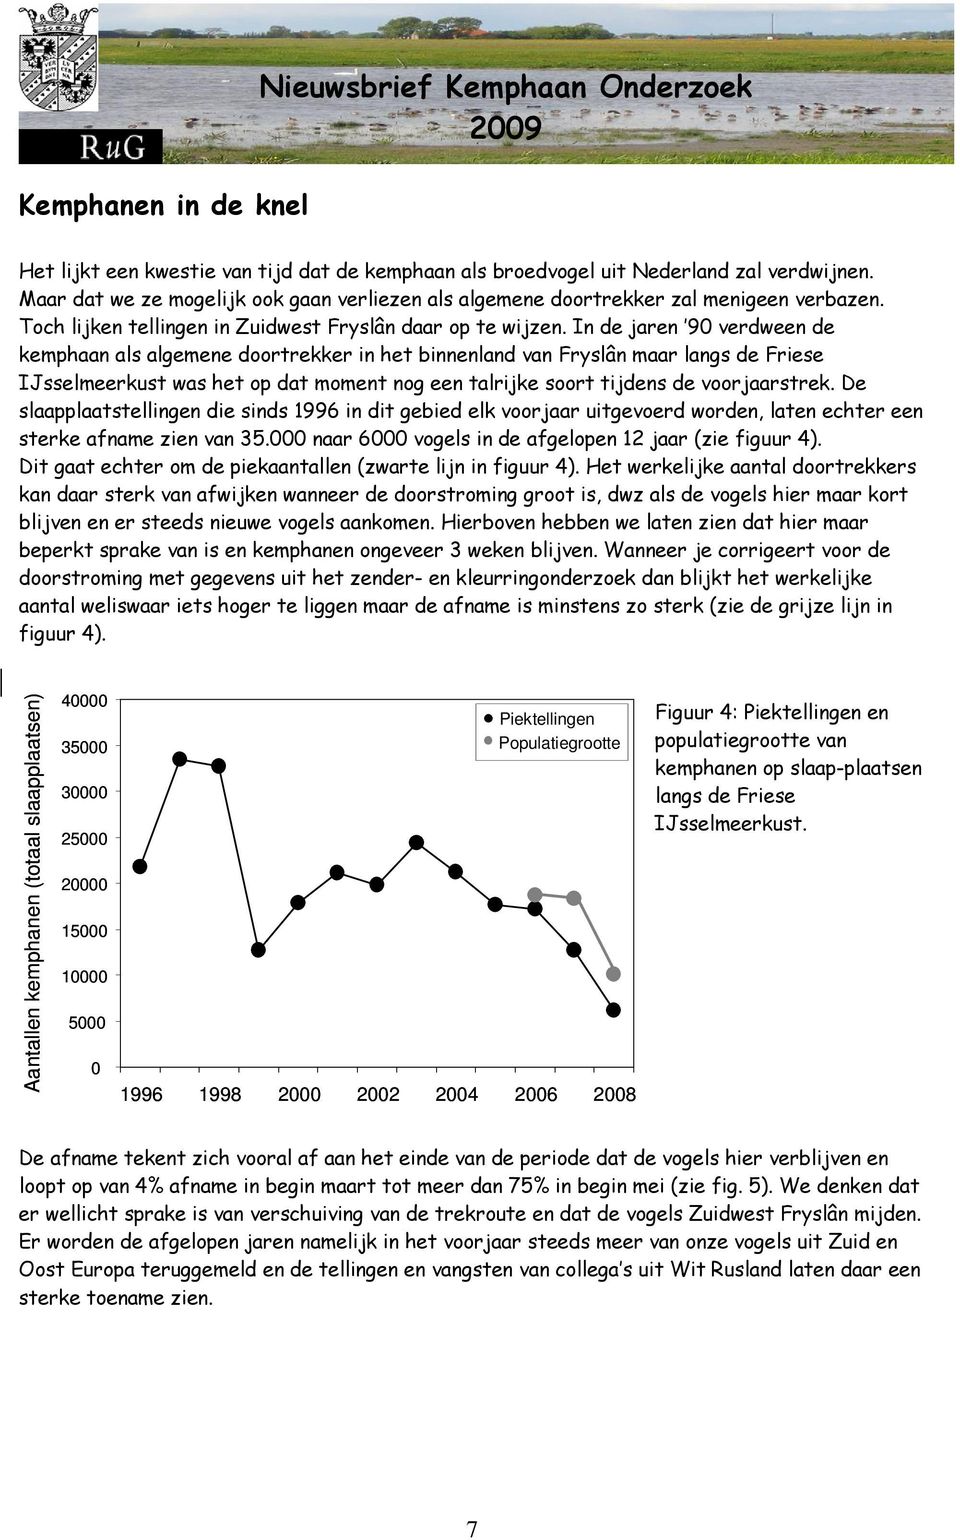 In de jaren 90 verdween de kemphaan als algemene doortrekker in het binnenland van Fryslân maar langs de Friese IJsselmeerkust was het op dat moment nog een talrijke soort tijdens de voorjaarstrek.